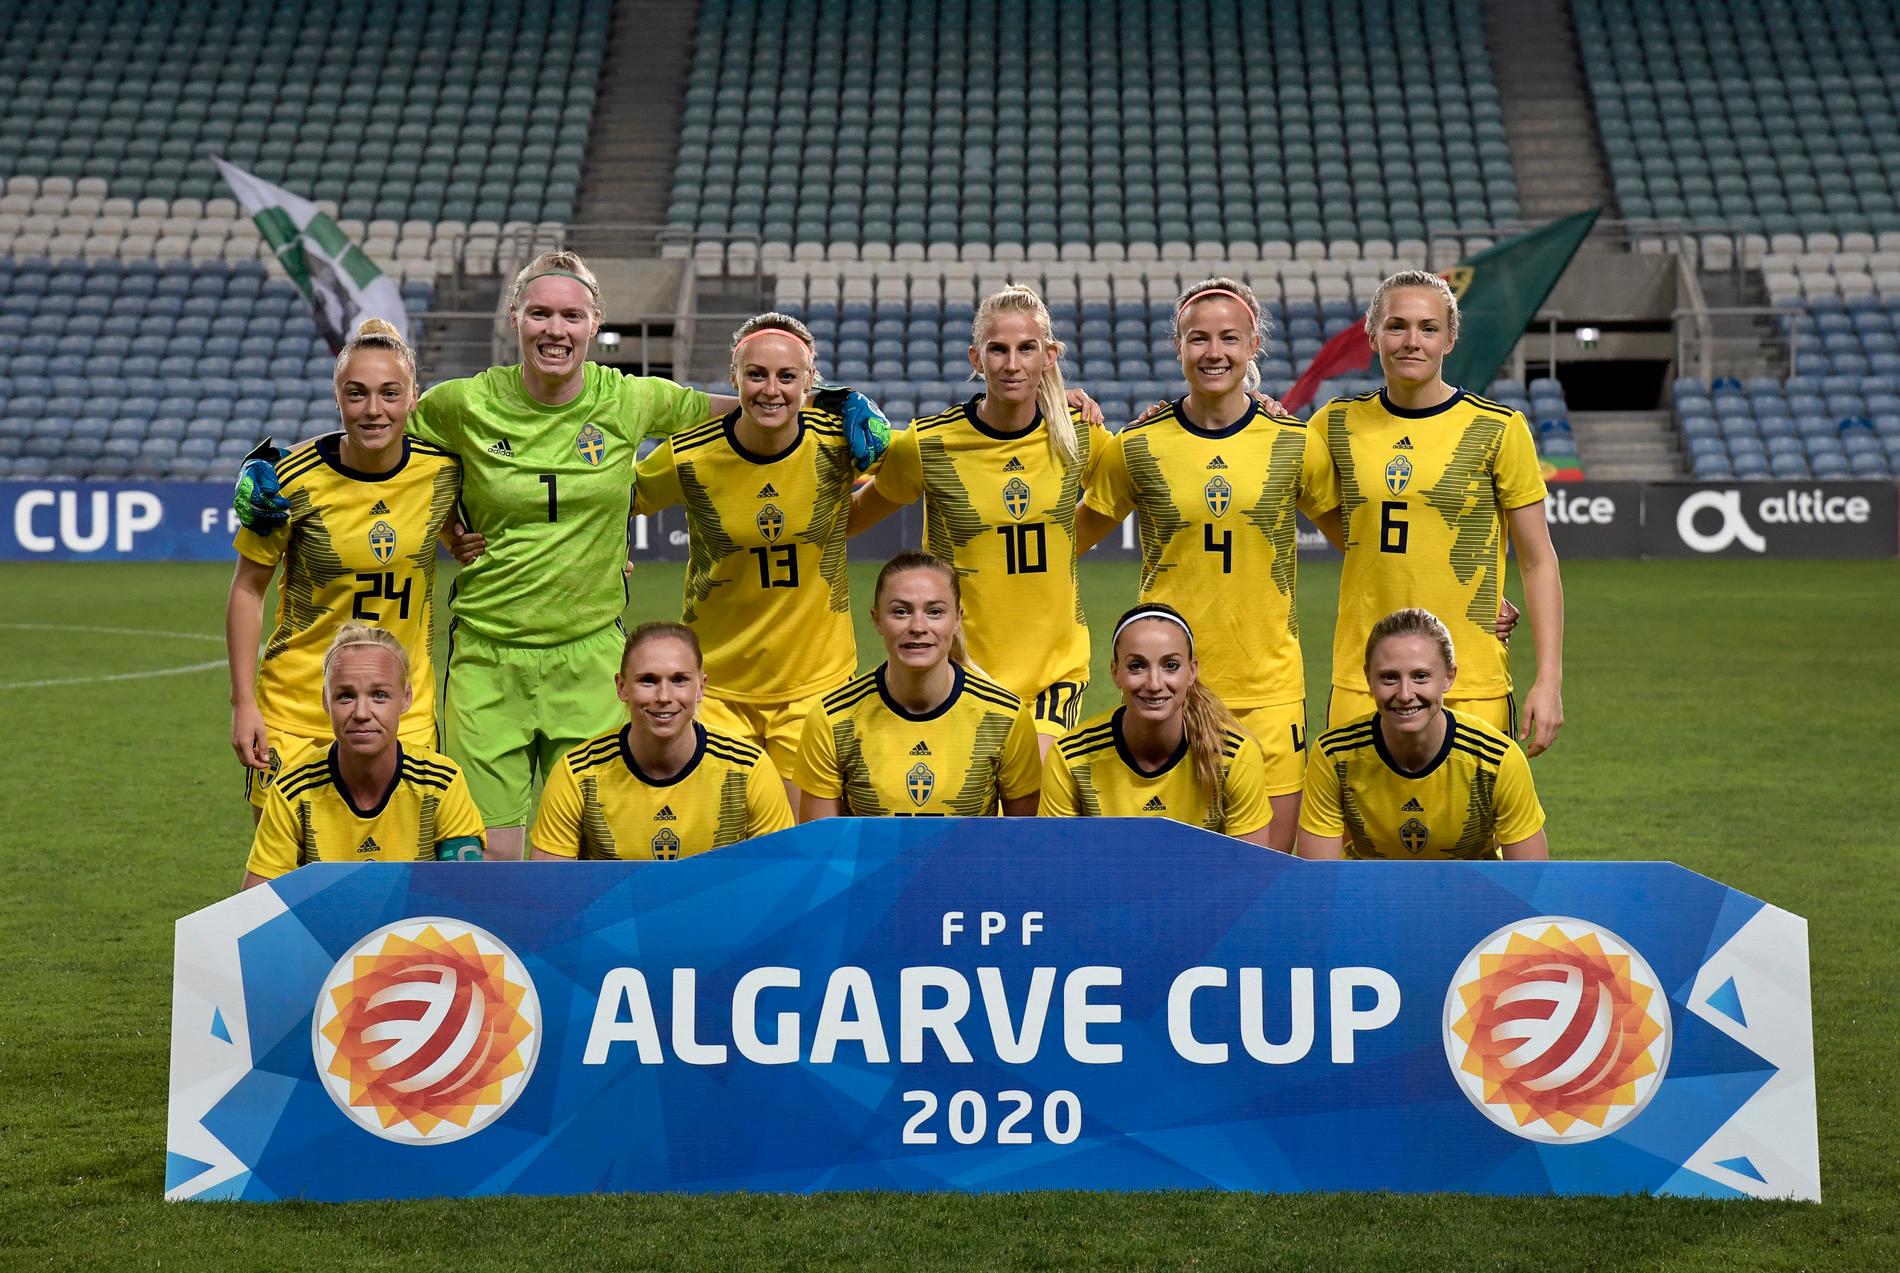 Sveriges startelva inför matchen mot Portugal i Algarve Cup 2020. Nästa upplaga av landslagsturneringen riskerar att ställas in. Arkivbild.